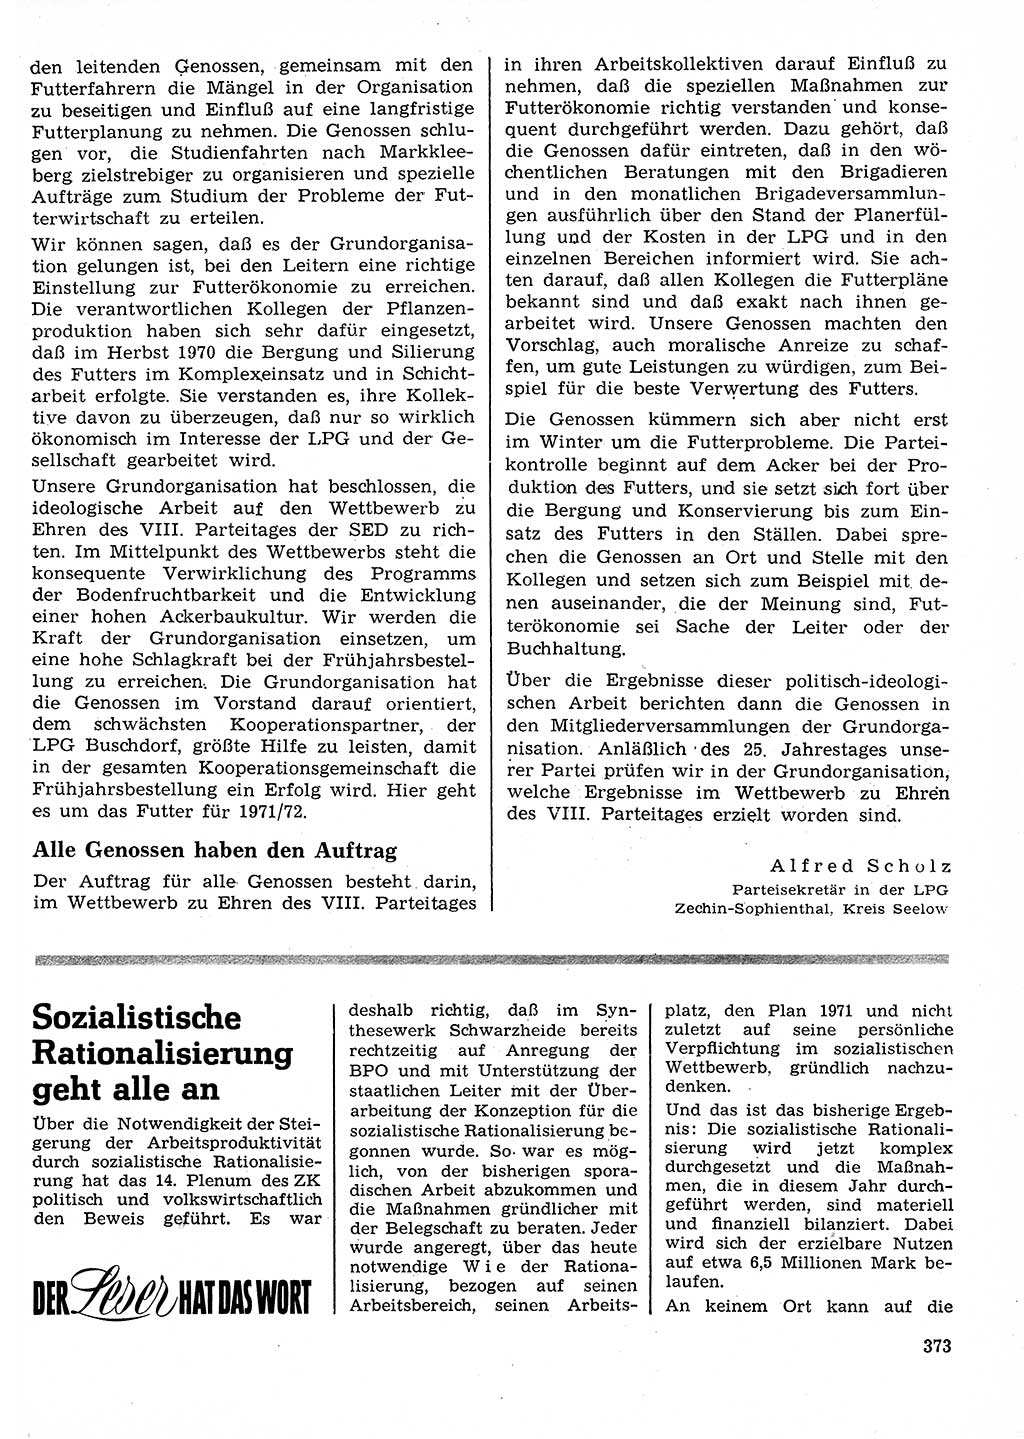 Neuer Weg (NW), Organ des Zentralkomitees (ZK) der SED (Sozialistische Einheitspartei Deutschlands) für Fragen des Parteilebens, 26. Jahrgang [Deutsche Demokratische Republik (DDR)] 1971, Seite 373 (NW ZK SED DDR 1971, S. 373)